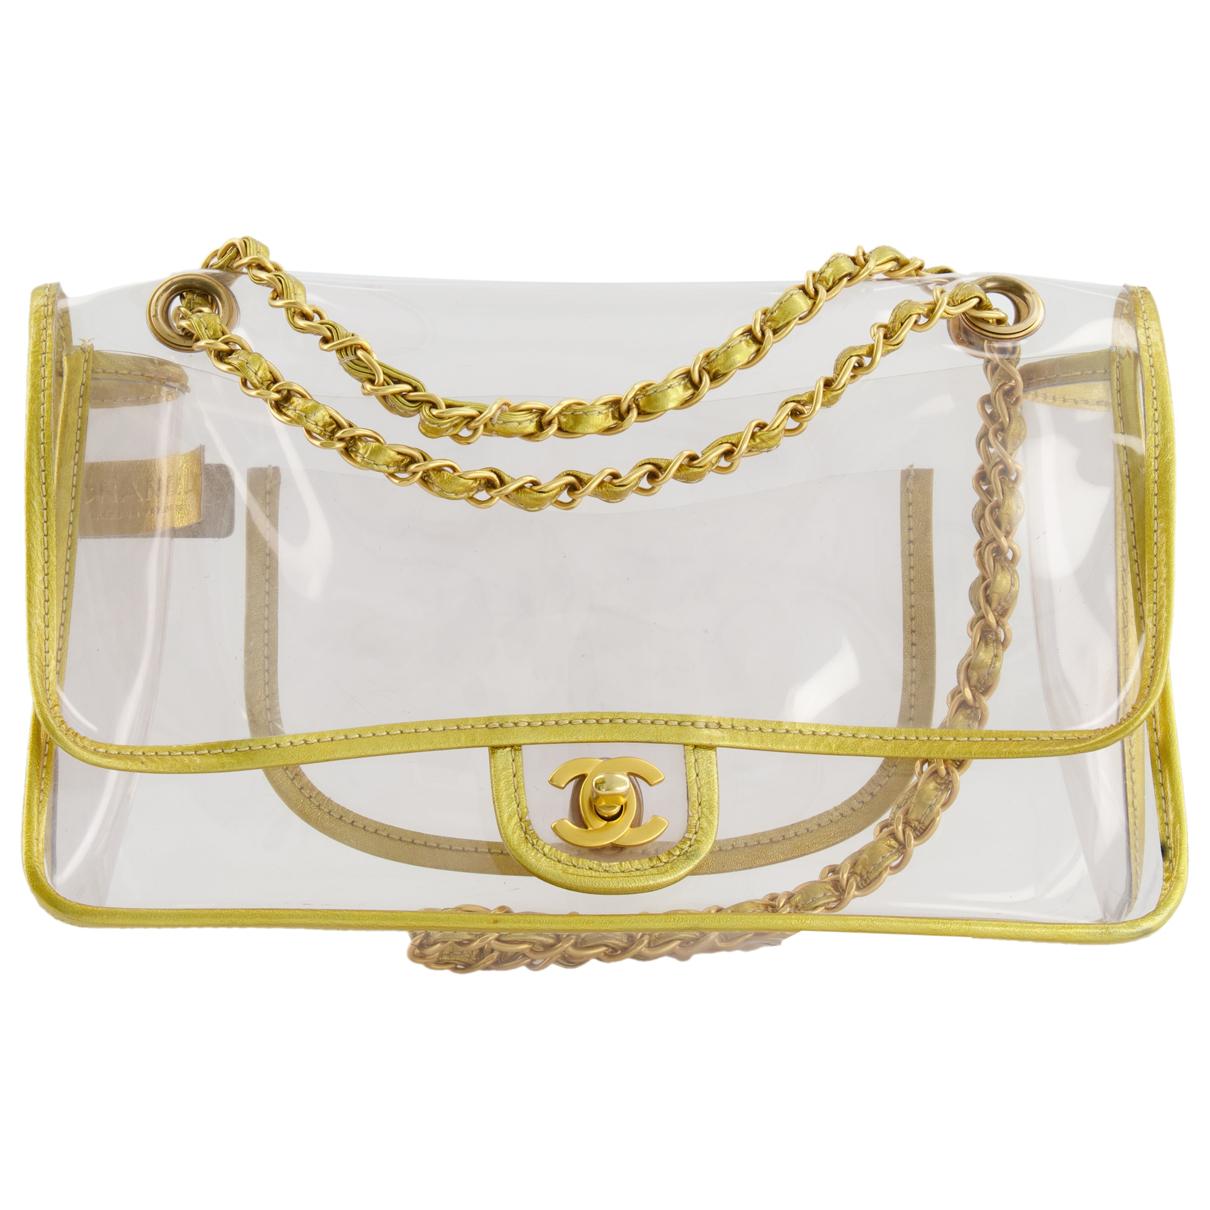 Chanel Transparent Bag - Shop on Pinterest